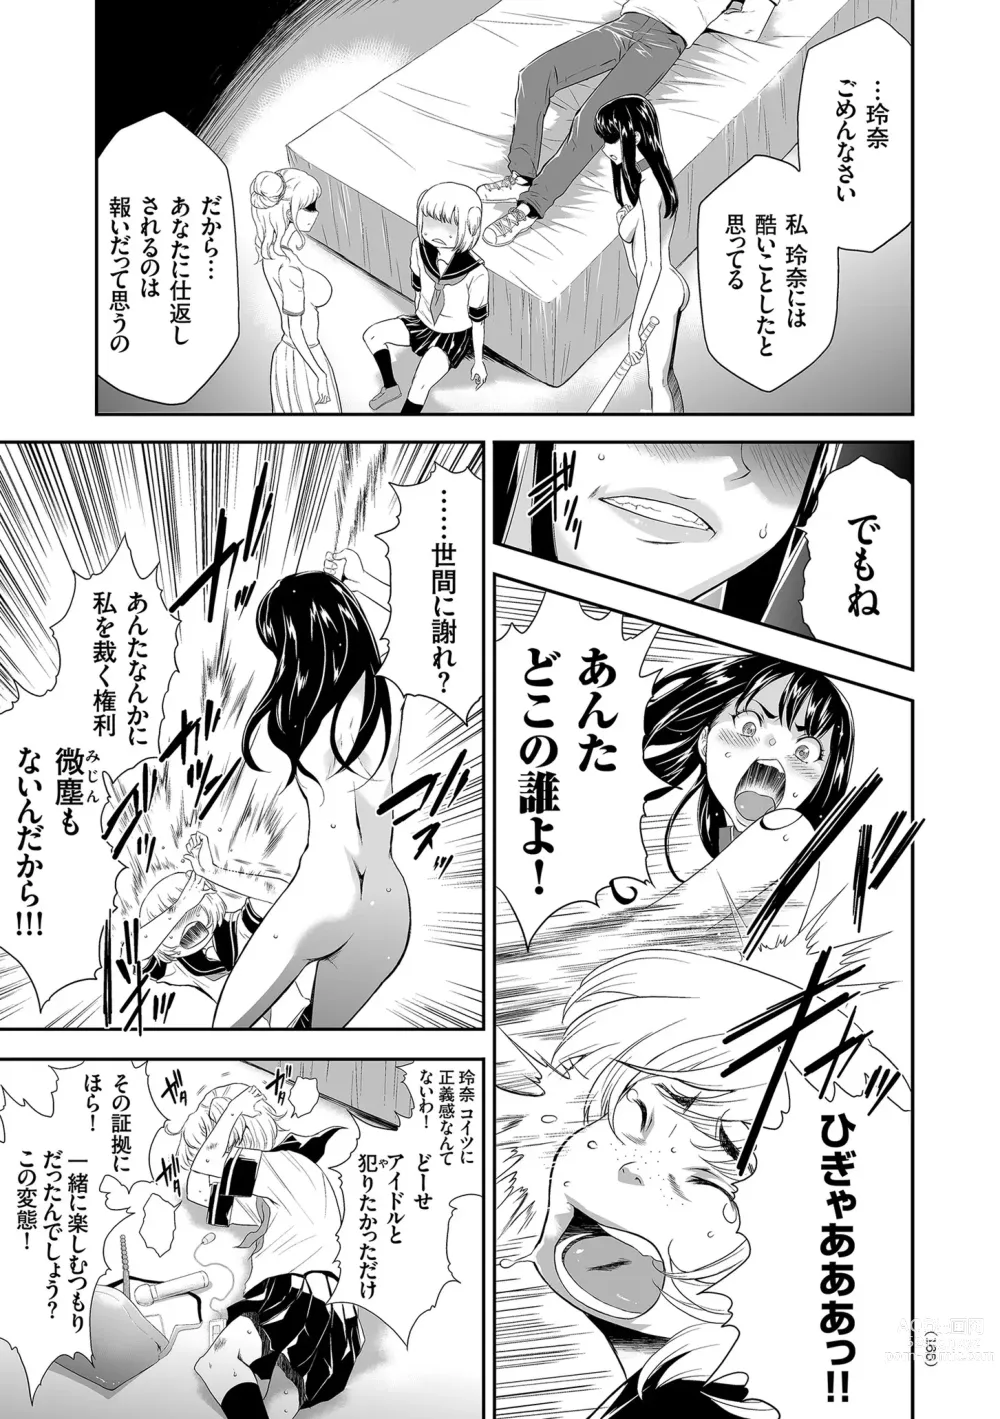 Page 165 of manga Idol Kankin Live!